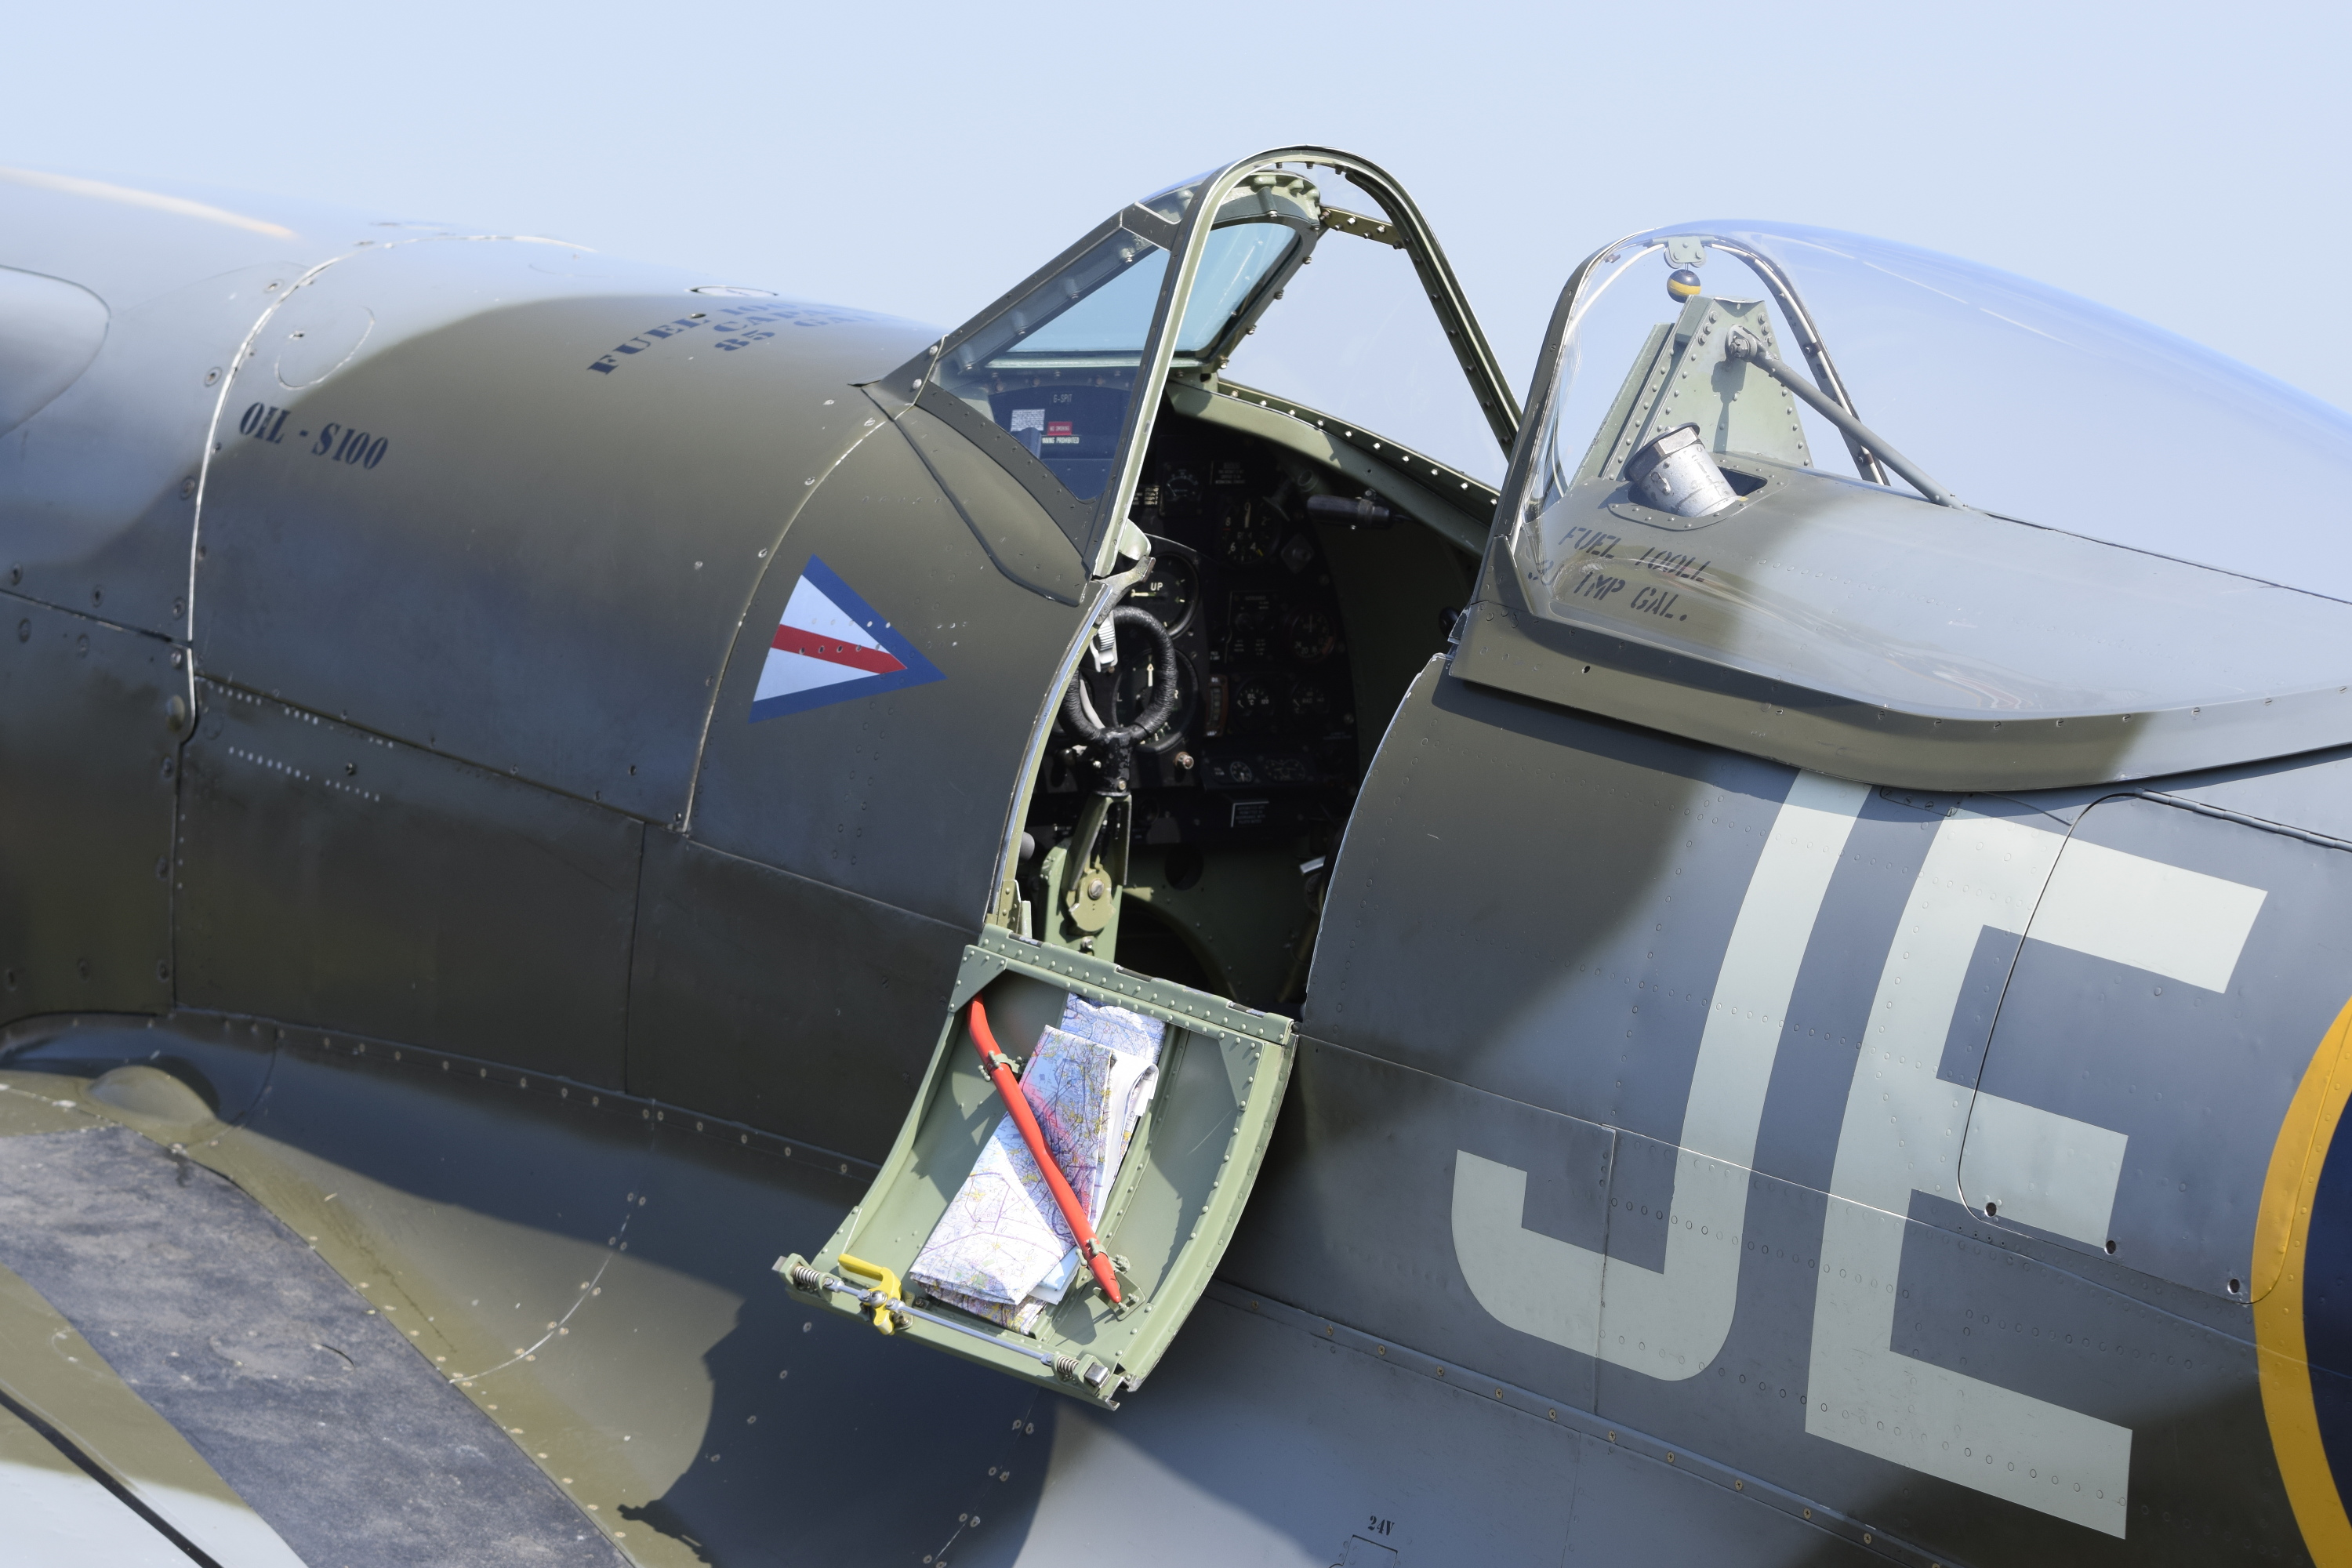 Spitfire Mk. FR XIV, MV293 (G-SPIT)